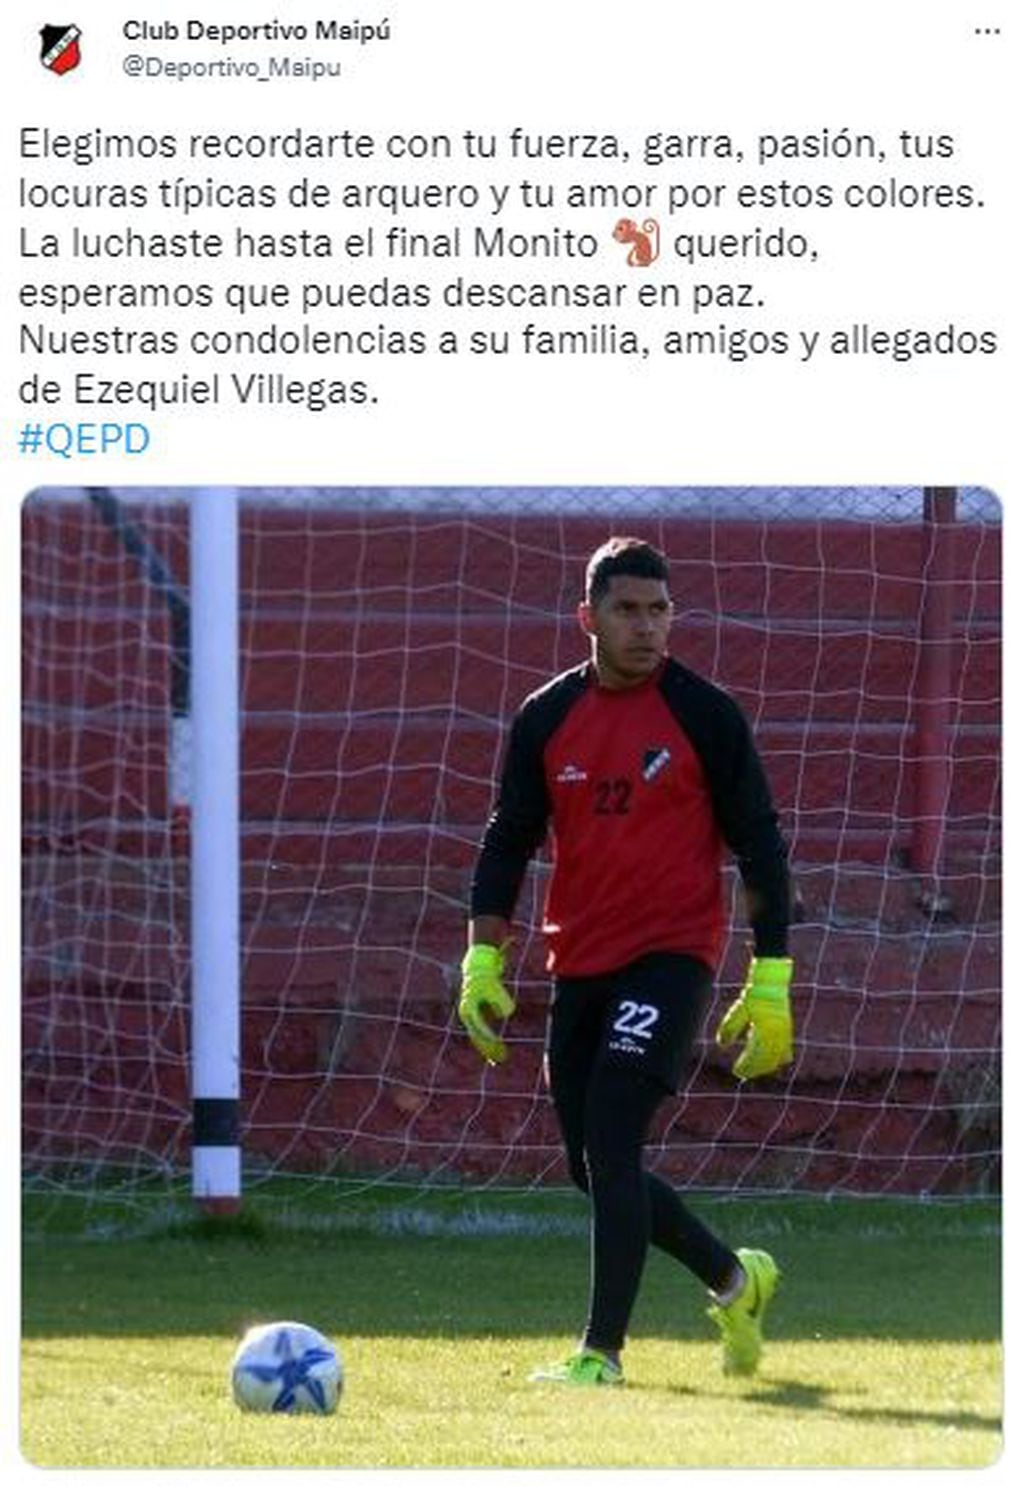 El mensaje de Deportivo Maipú para despedir a Villegas.